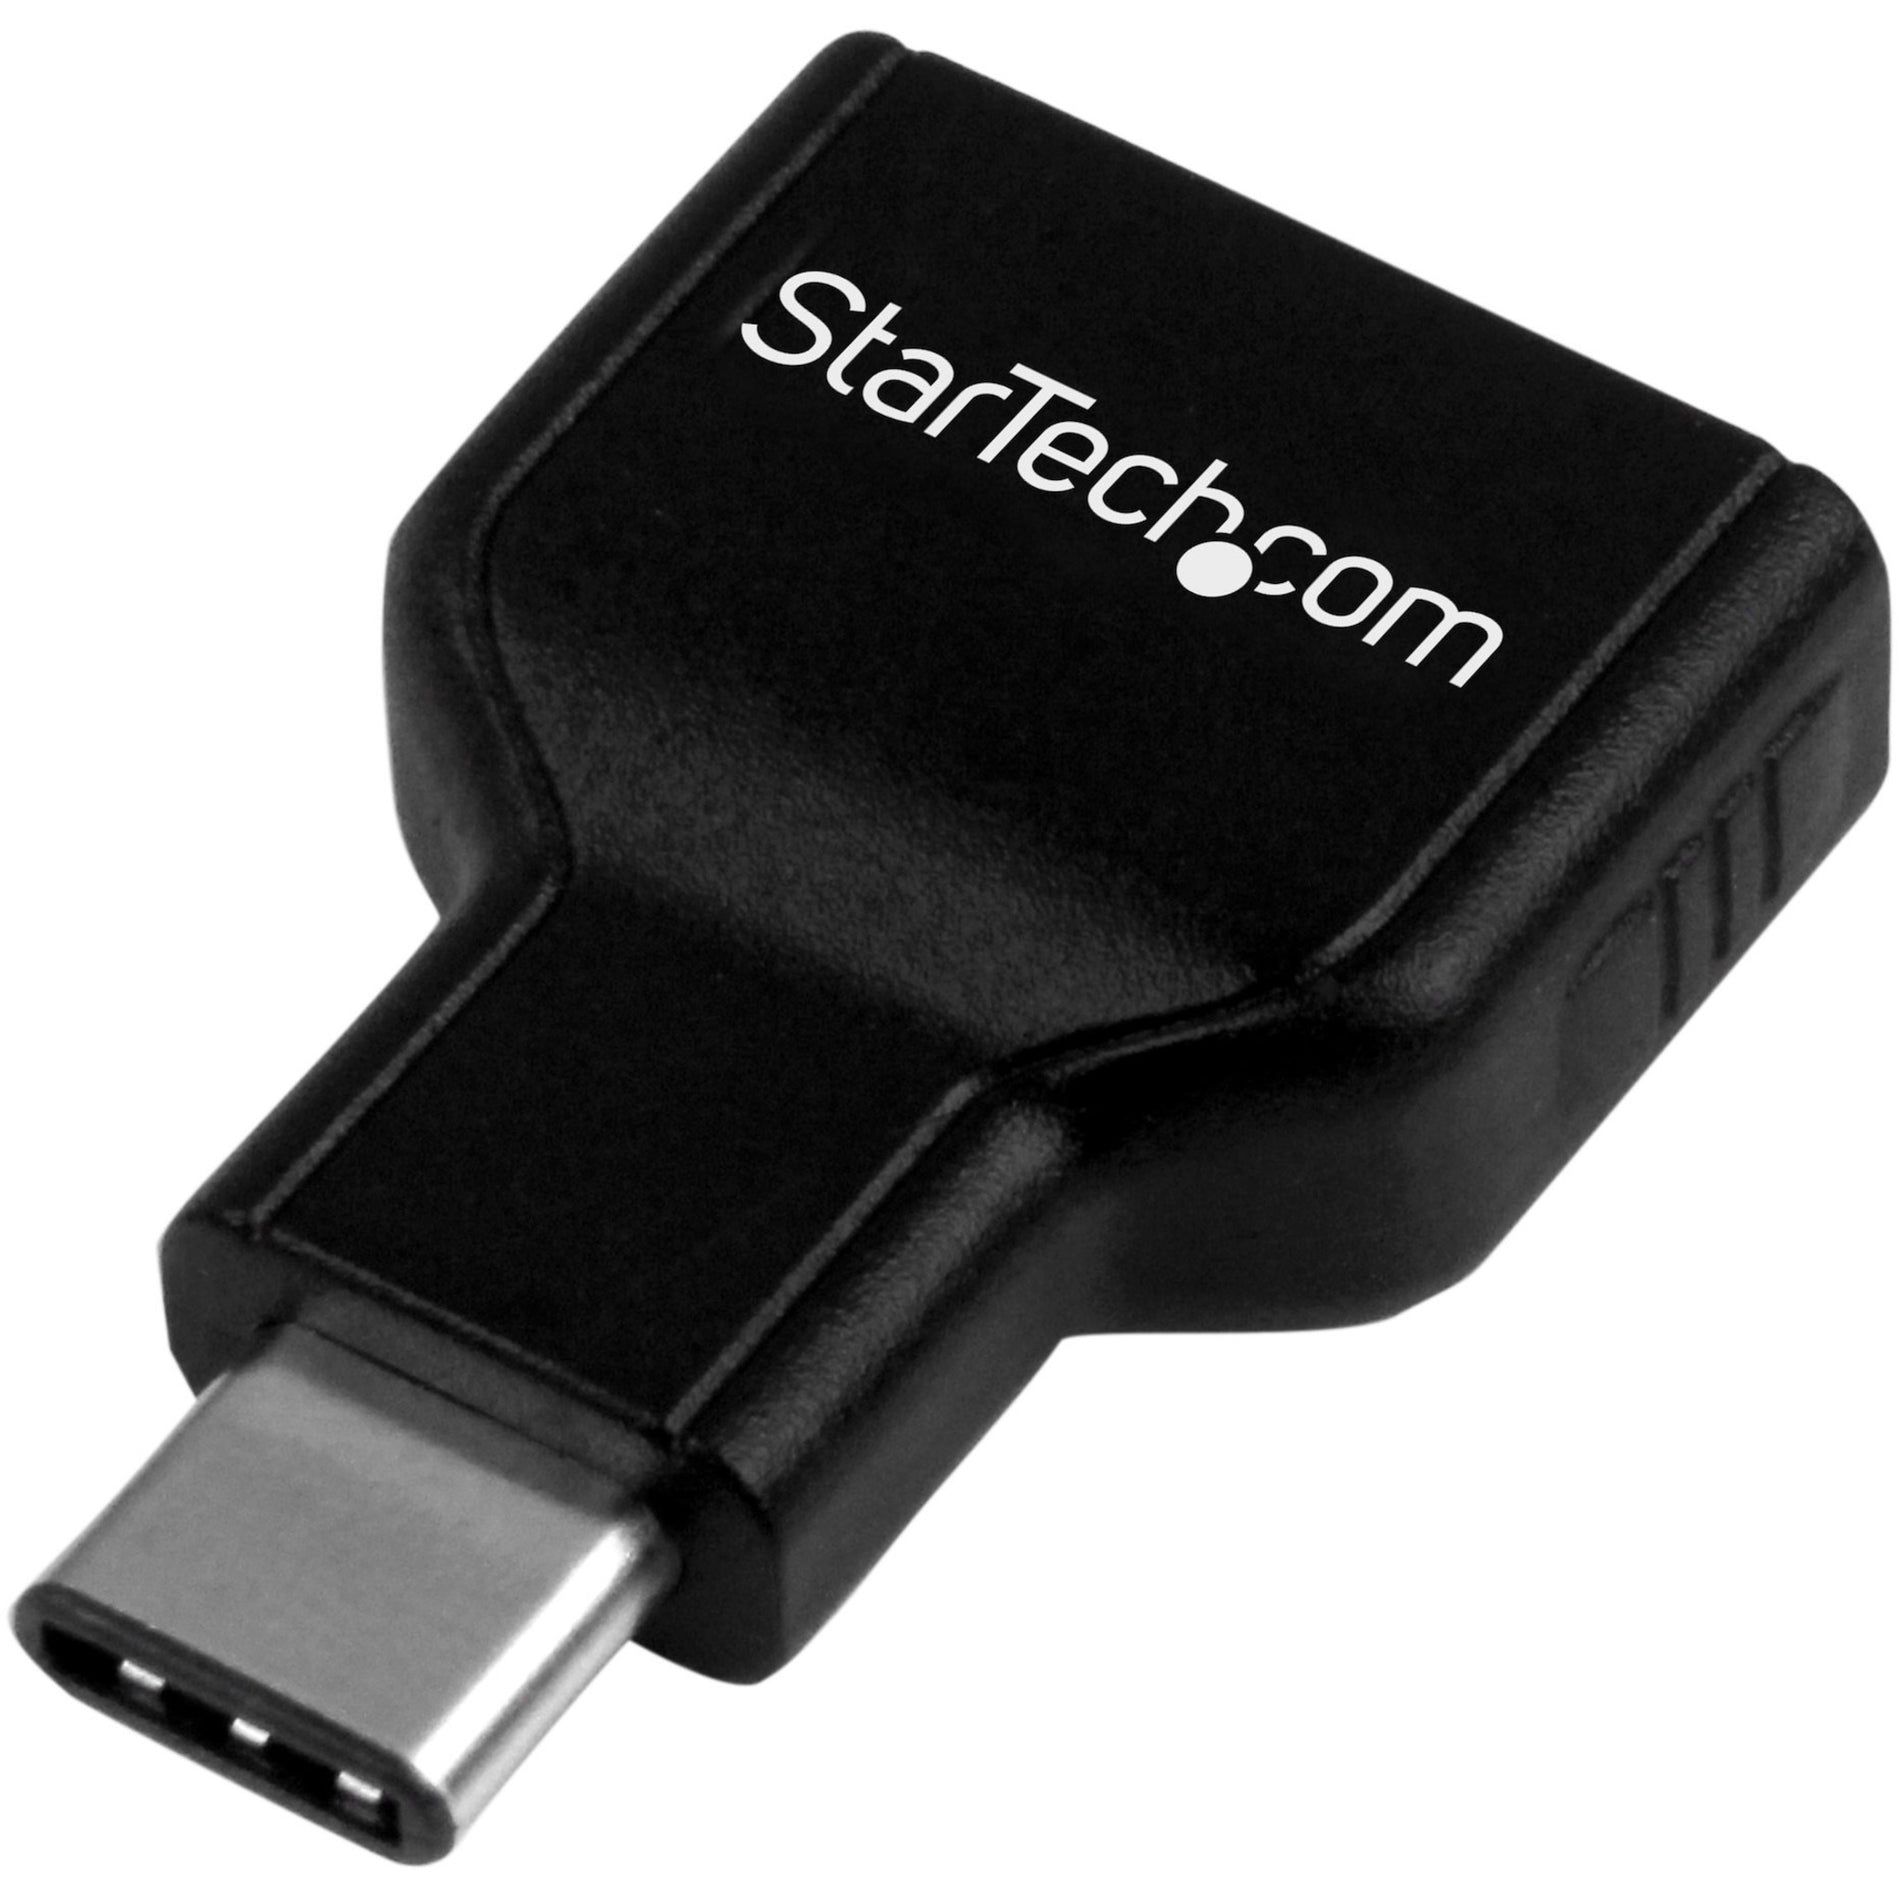 品牌名称: StarTech.com USB 3.0 - USB 3.0 Apple MacBook - 苹果 MacBook Chromebook Pixel - Chromebook 像素 USB-C - USB-C USB-A - USB-A Connect - 连接 Adapter - 适配器 Male/Female - 男/女